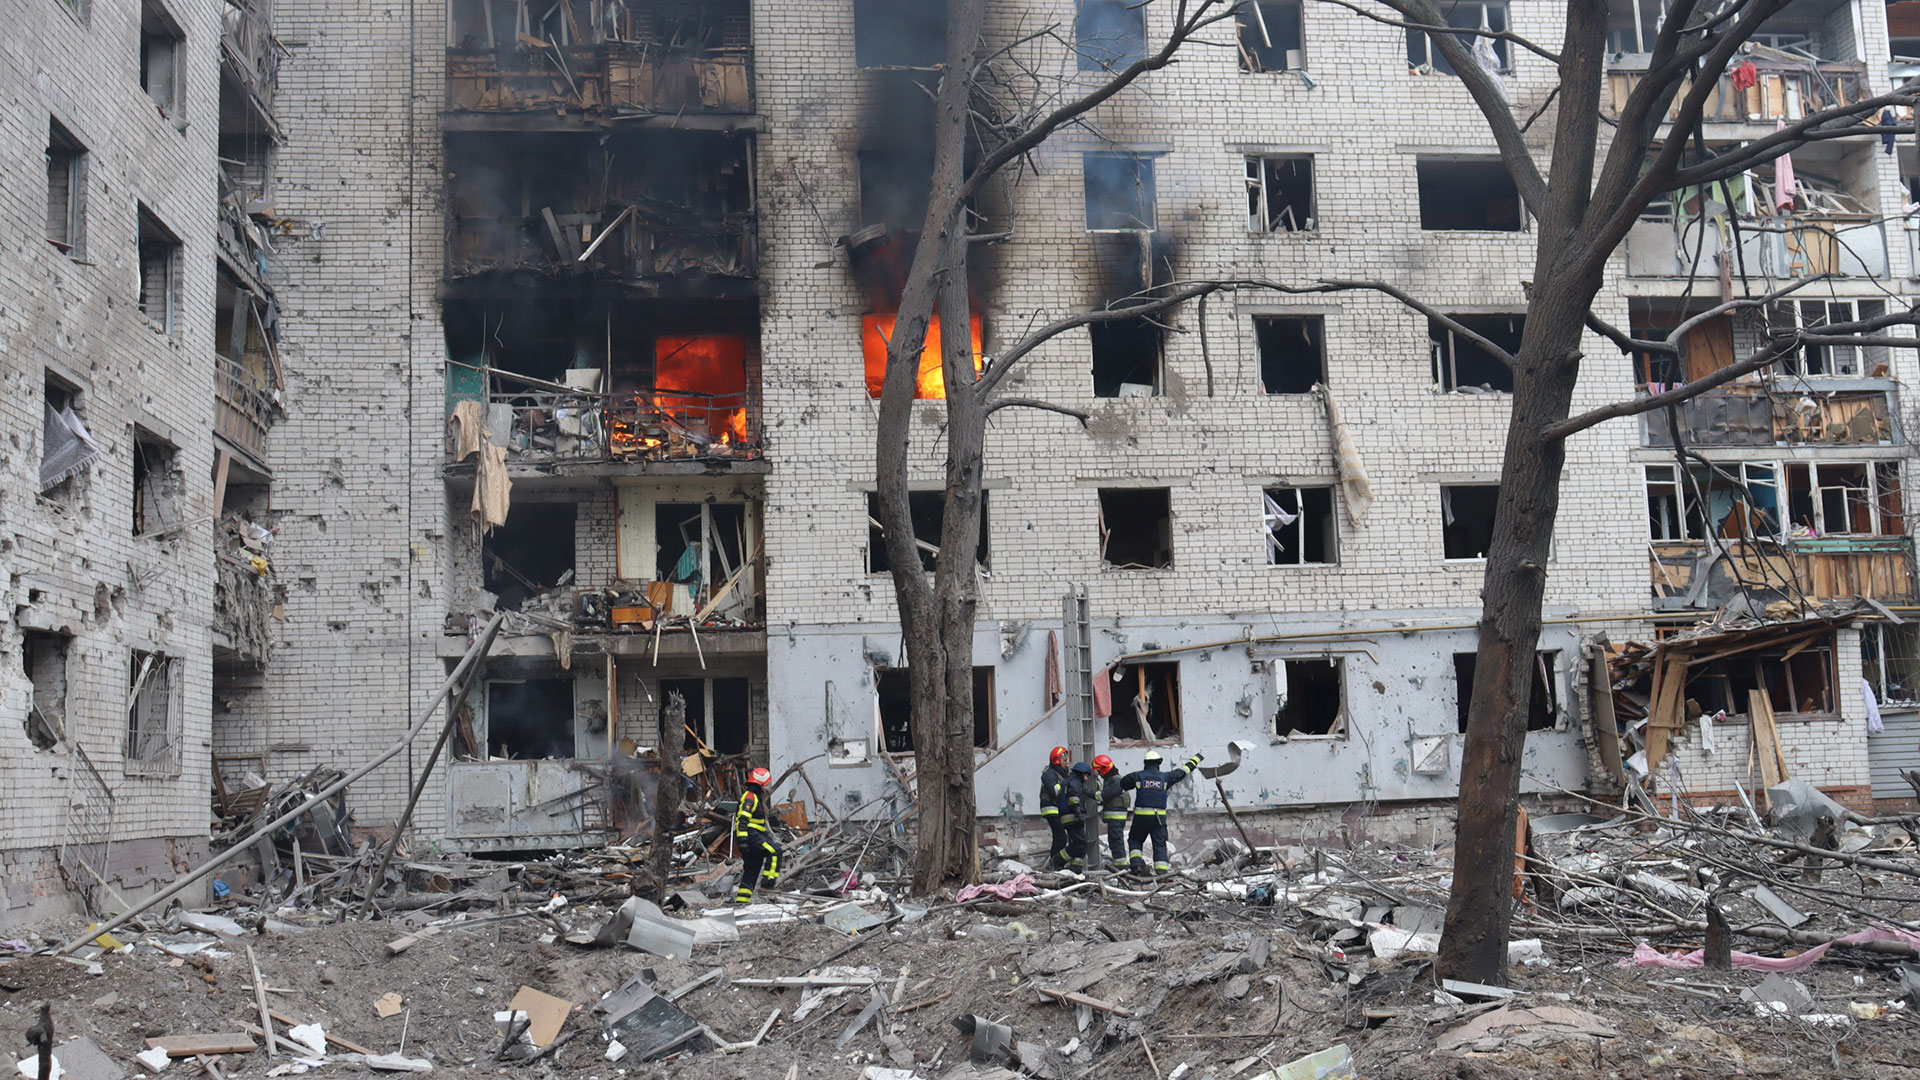 Los bomberos tratan de controlar el incendio sobre un edificio de la calle Bohuna en Chernihiv, tras el bombardeo ruso el 3 de marzo de 2022. (Archivo del Servicio de emergencias de Chernihiv)